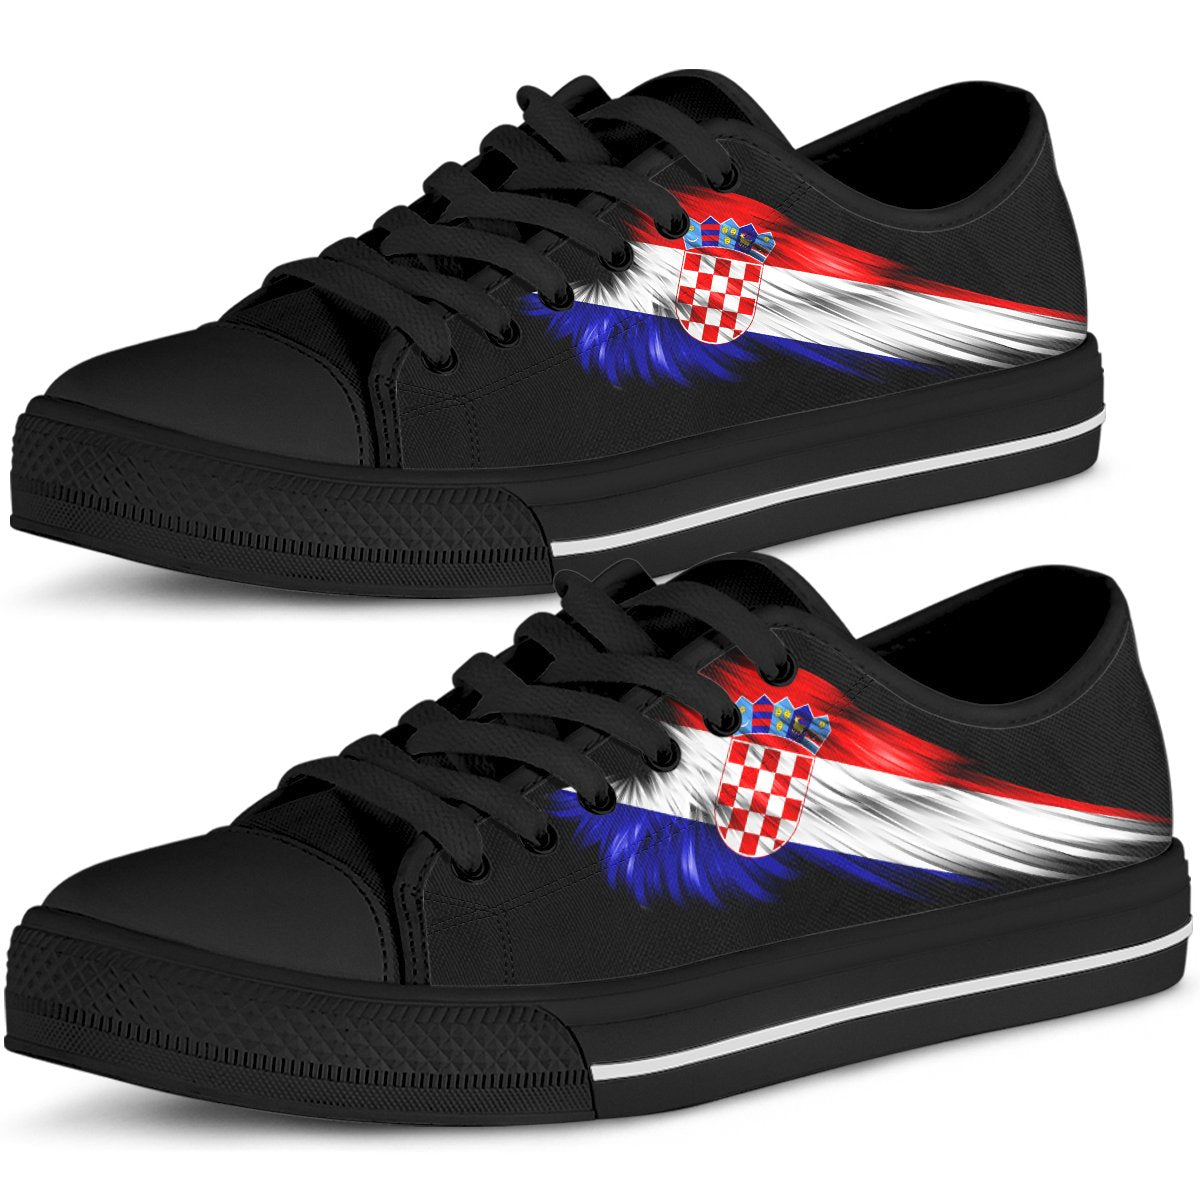 hrvatska-croatia-wing-low-top-shoes-womenmen